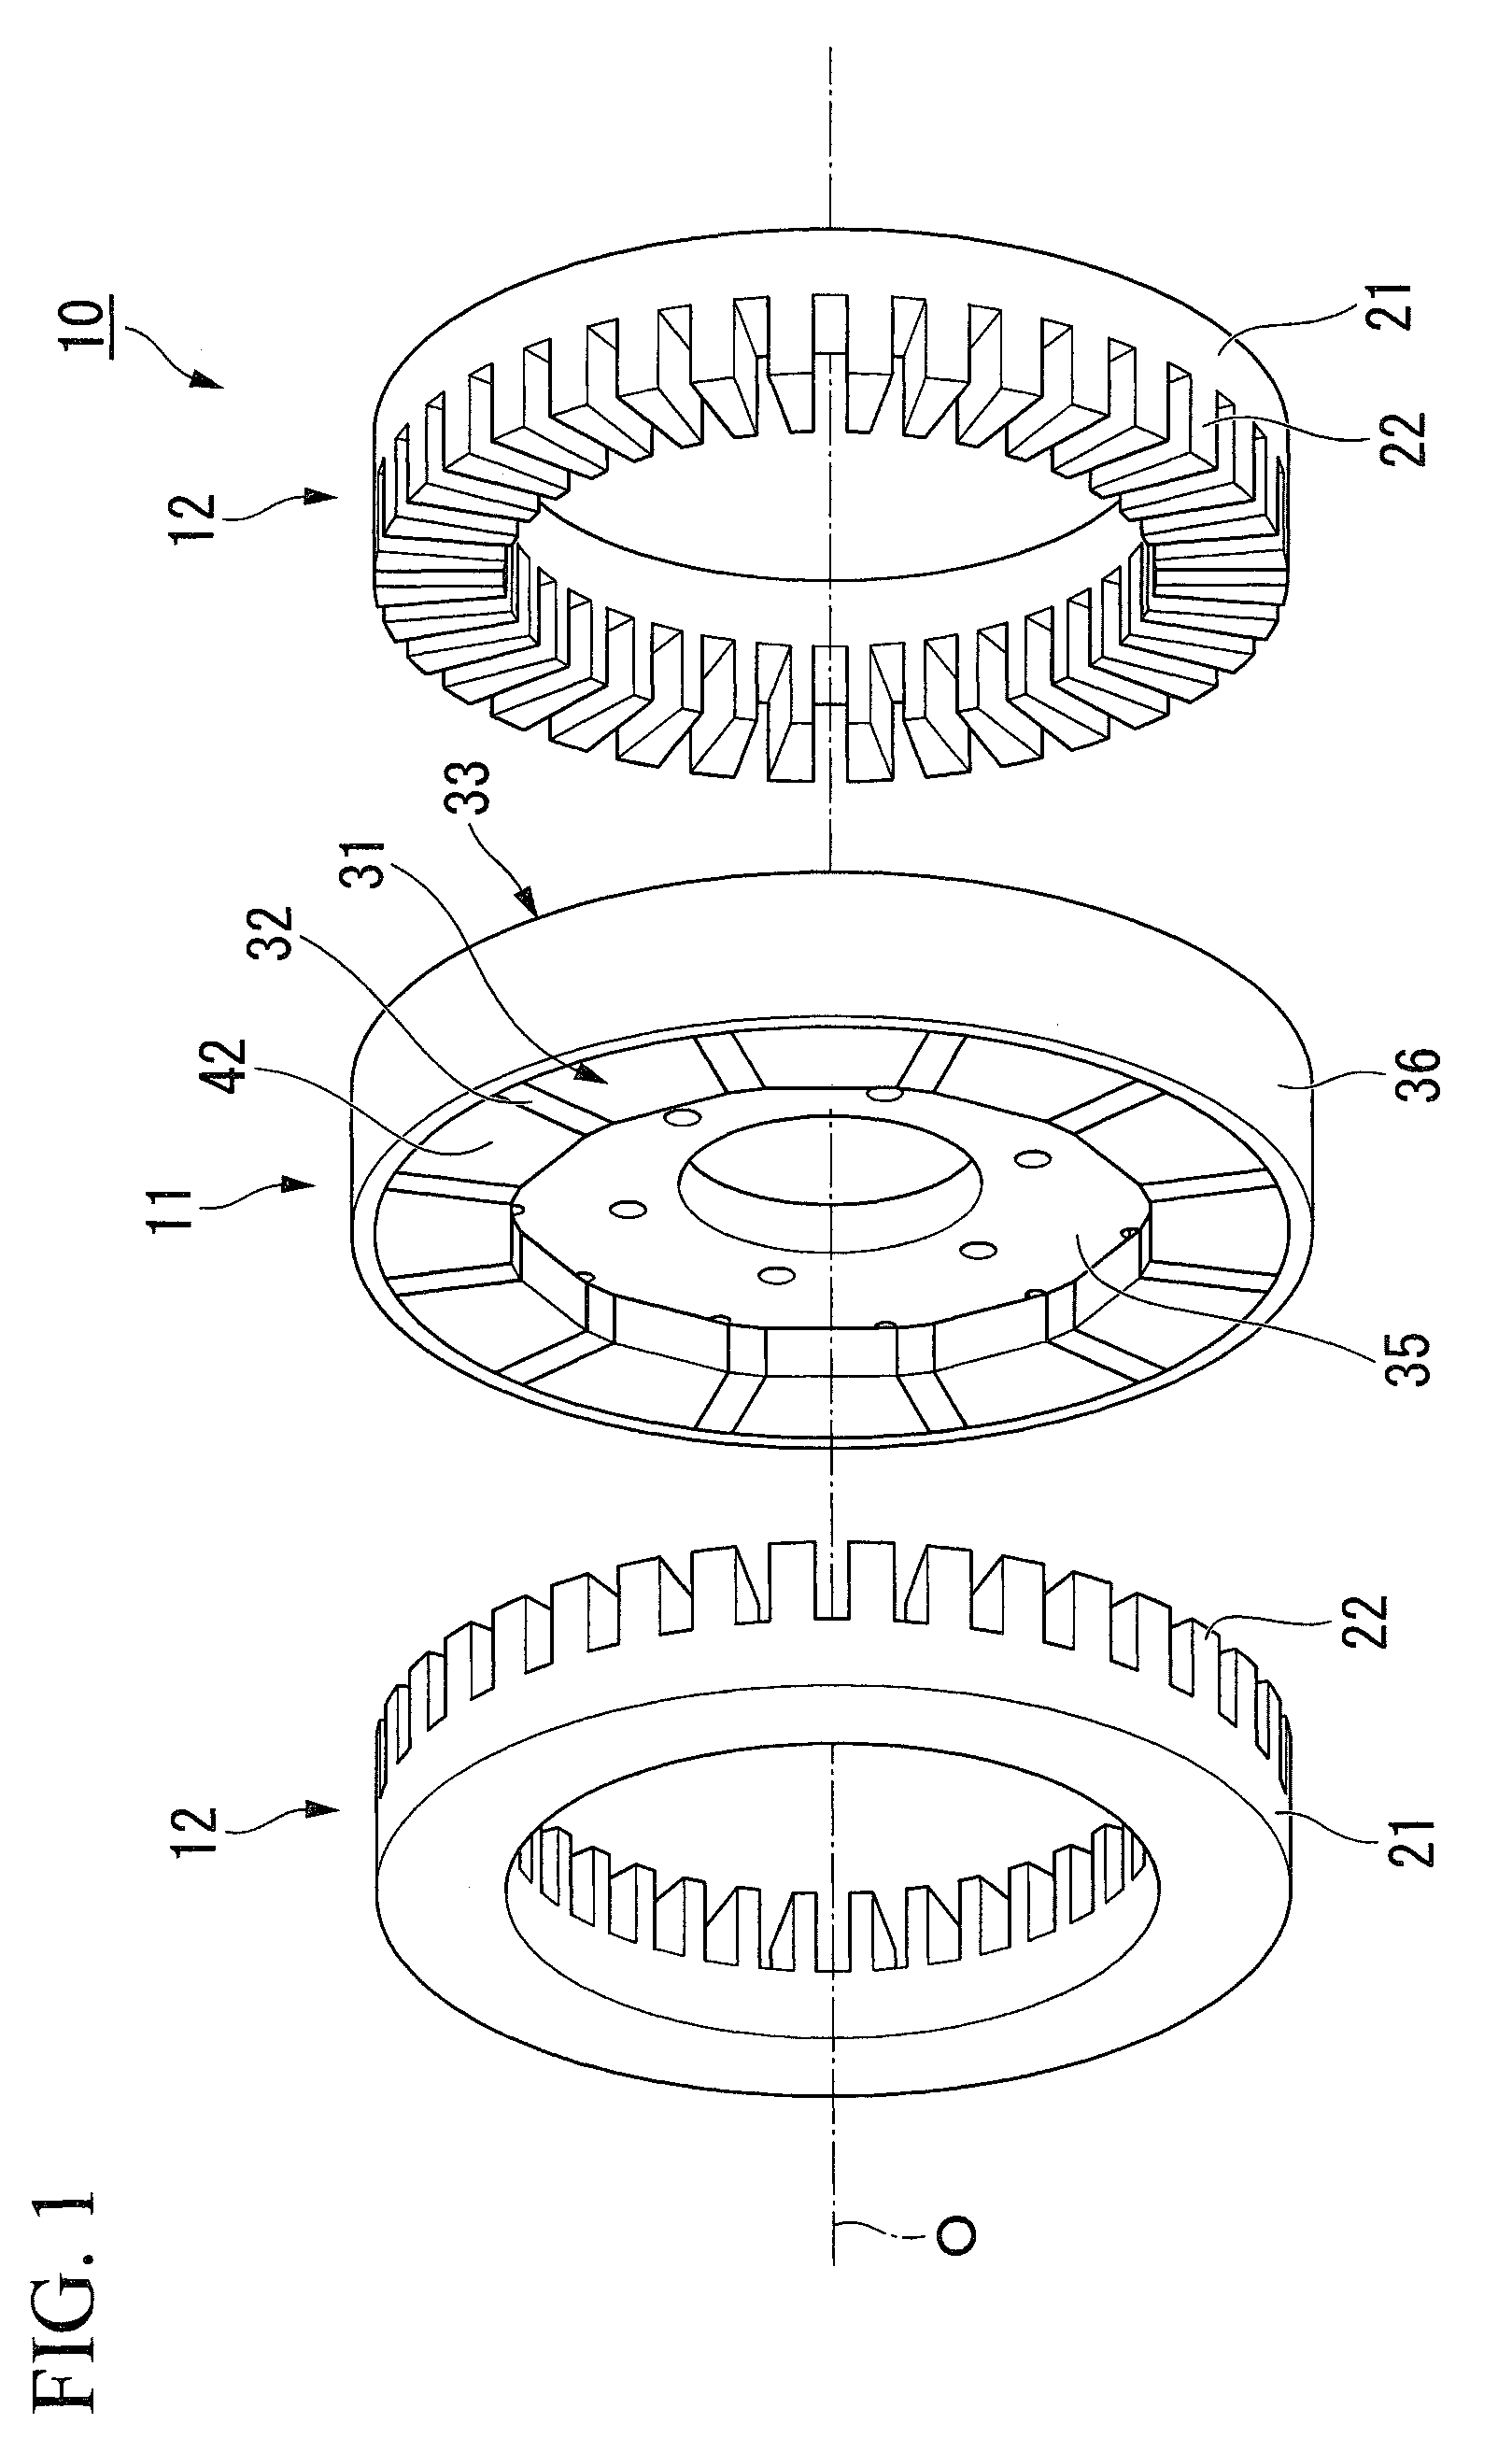 Axial gap type motor